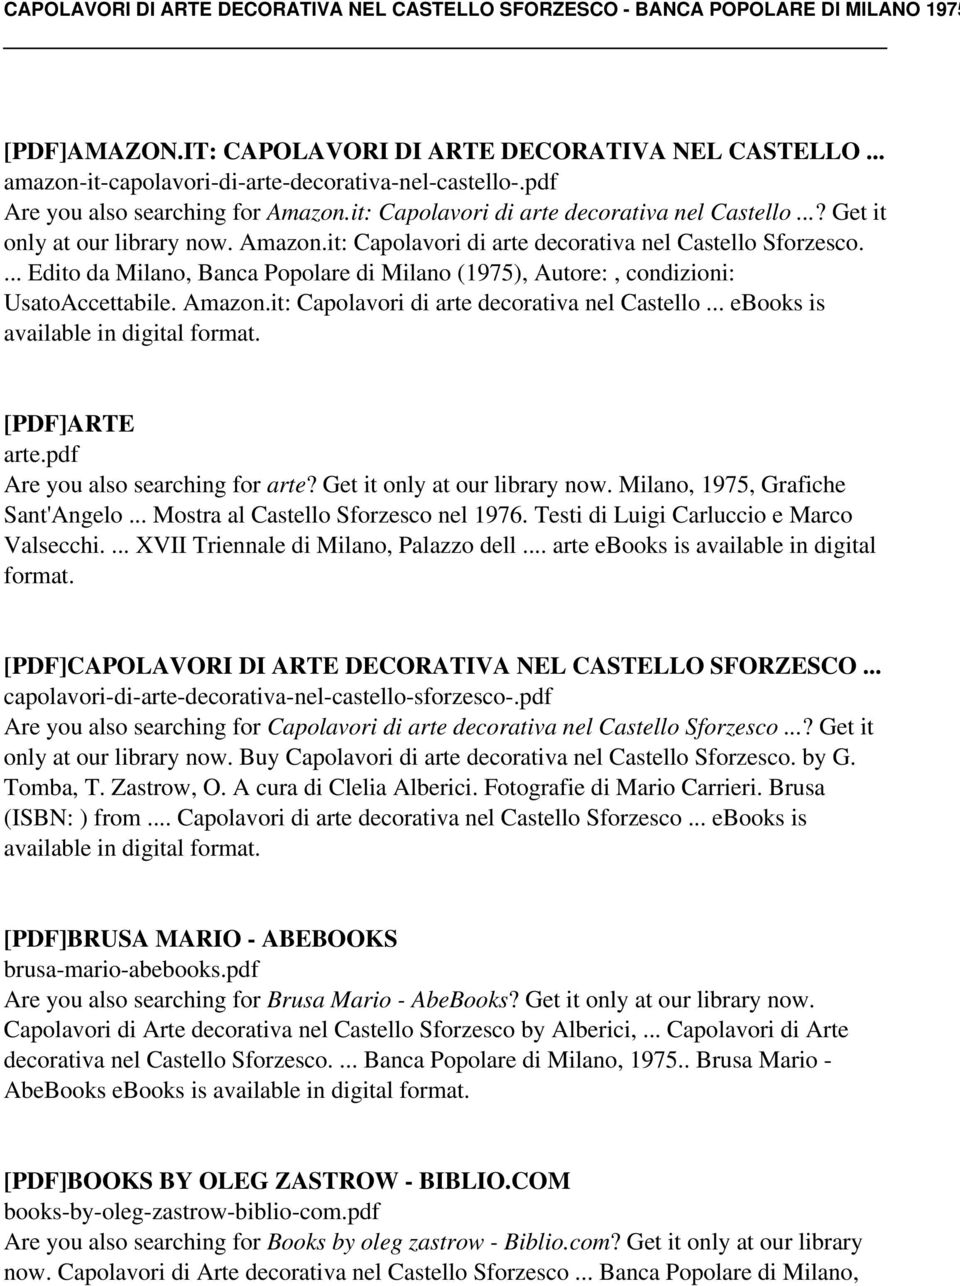 ... Edito da Milano, Banca Popolare di Milano (1975), Autore:, condizioni: UsatoAccettabile. Amazon.it: Capolavori di arte decorativa nel Castello... ebooks is available in digital [PDF]ARTE arte.